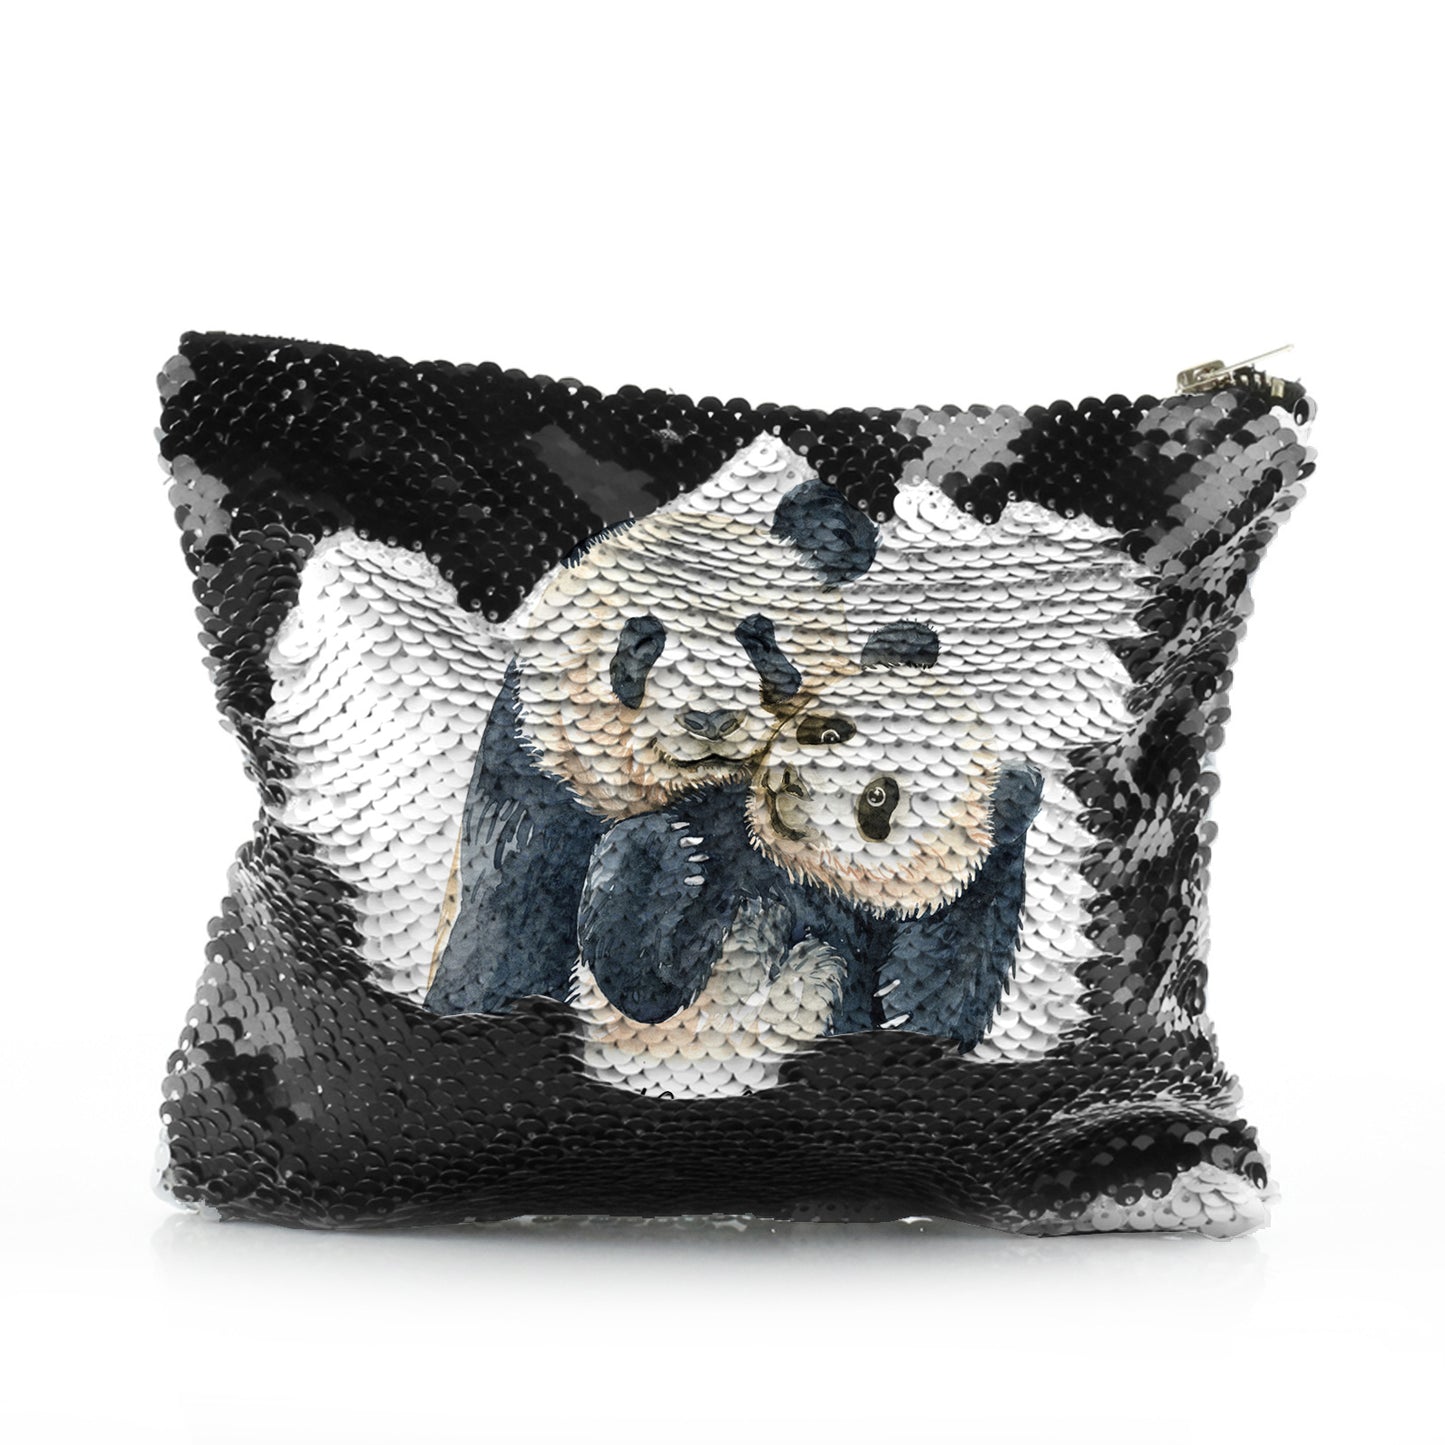 Personalisierte Pailletten-Reißverschlusstasche mit Begrüßungstext und umarmenden Mama- und Baby-Pandas